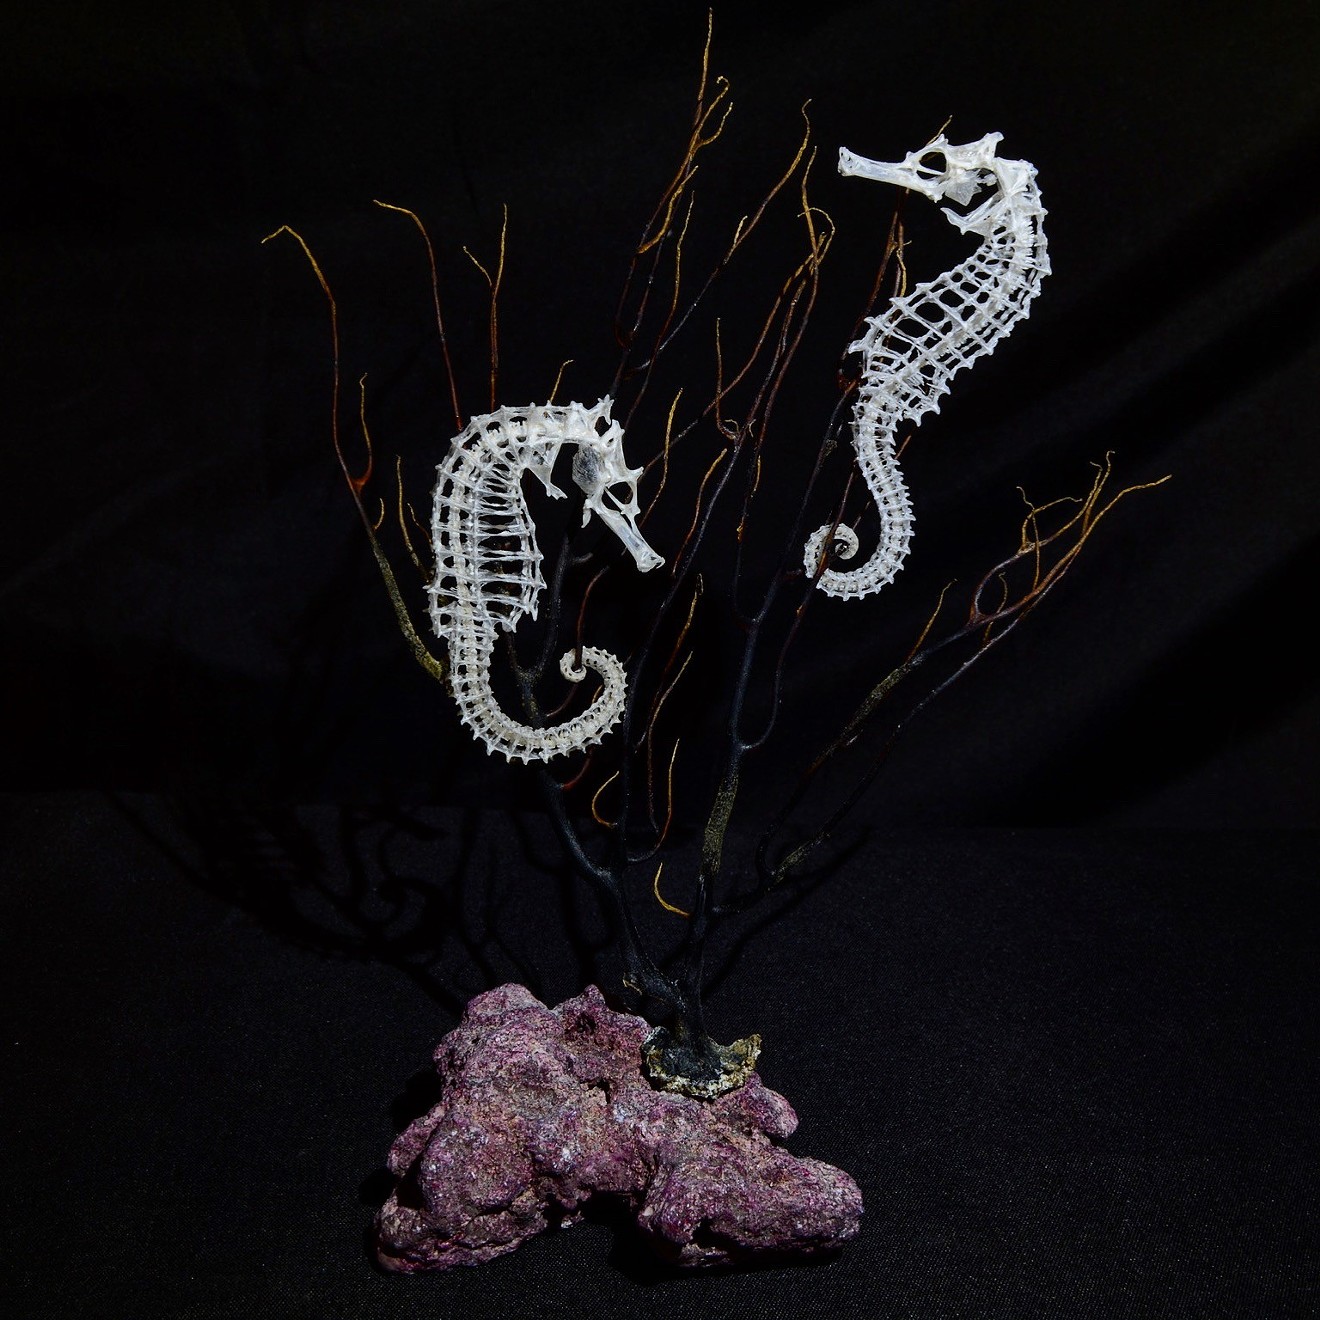 A pair of seahorse skeletal articulations from Inner Workings Art